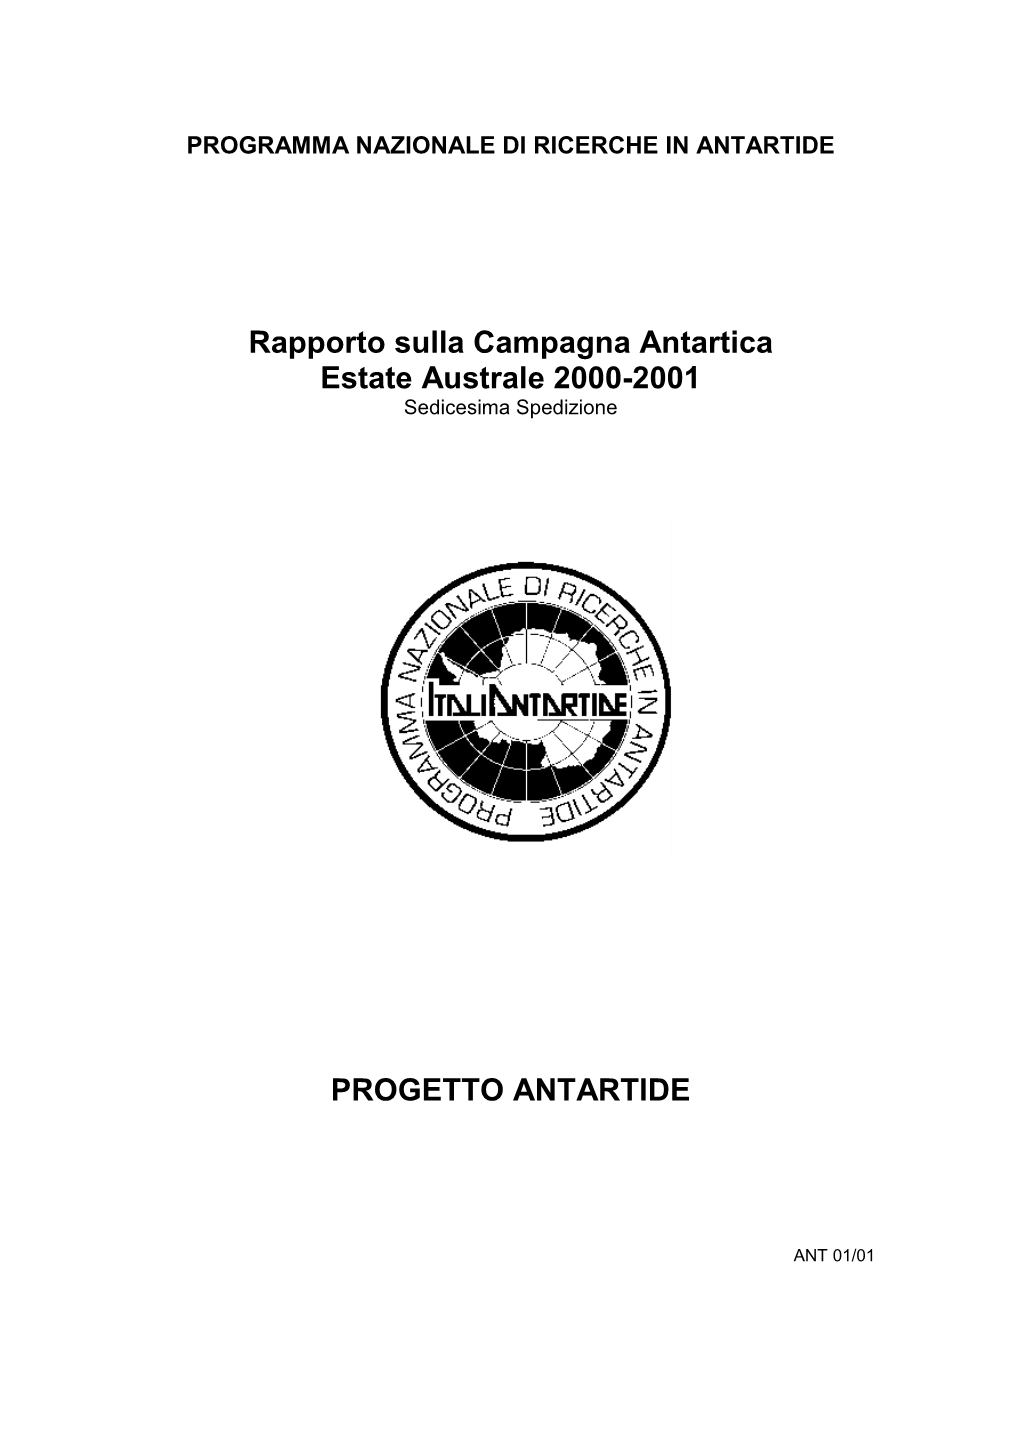 Rapporto Sulla Campagna Antartica Estate Australe 2000-2001 Sedicesima Spedizione